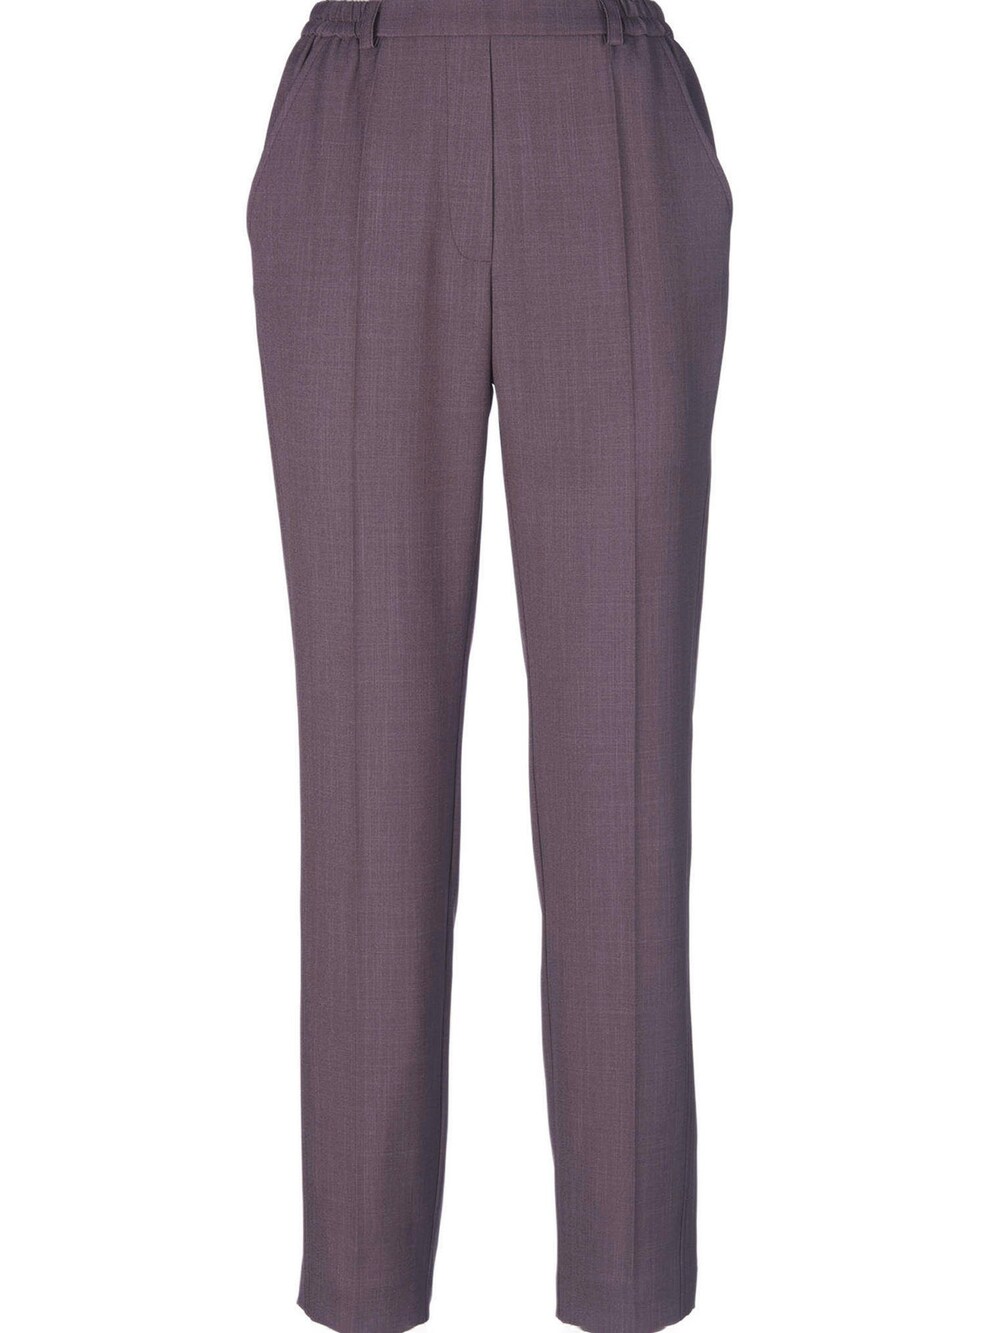 Обычные плиссированные брюки Goldner, коричневый обычные плиссированные брюки edited leona оливковый